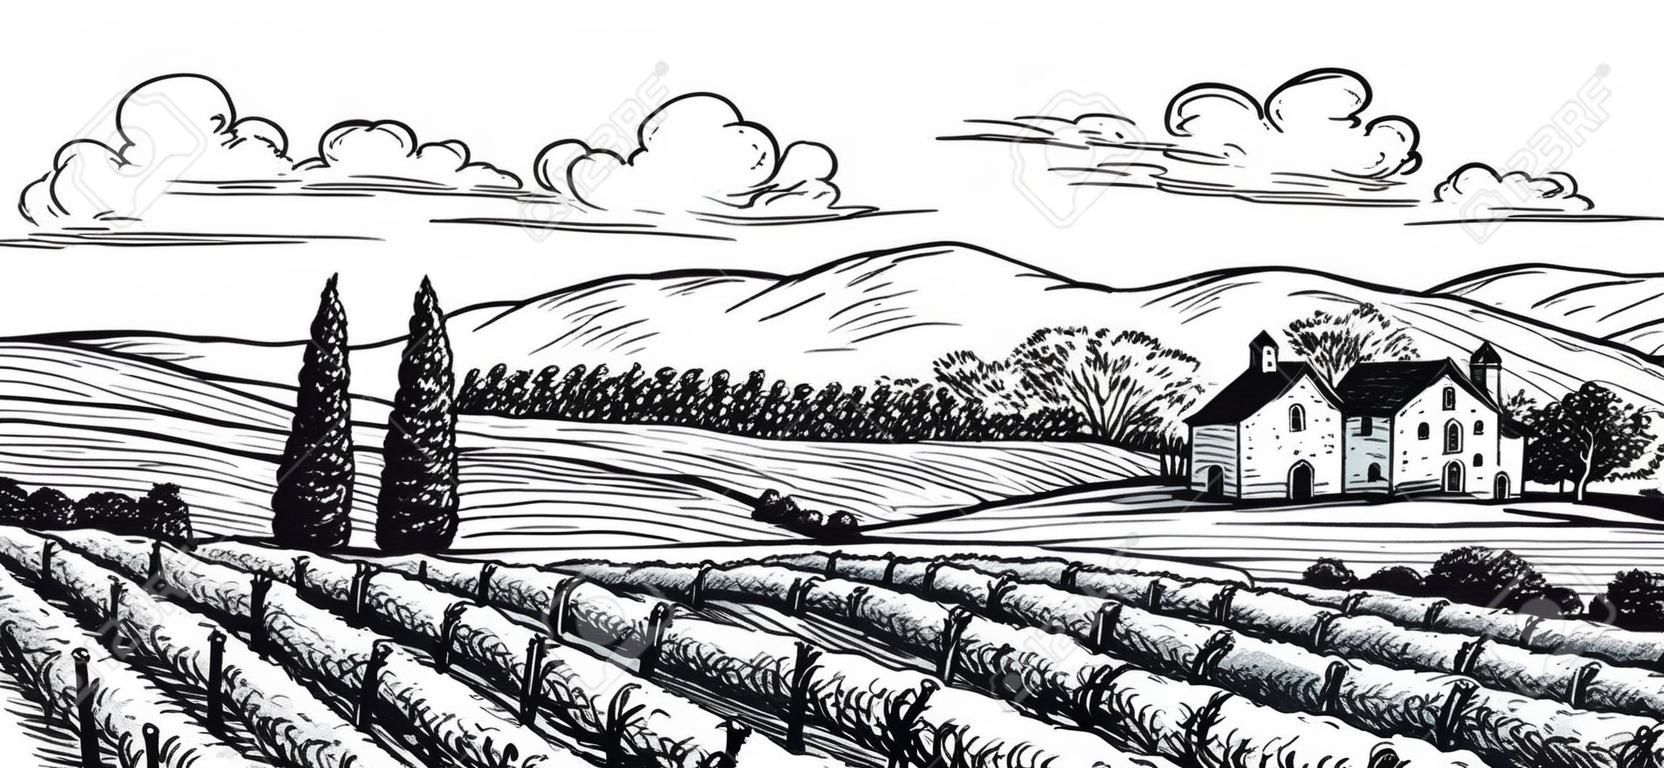 Dibujado a mano paisaje de viñedos. Aislado en el fondo blanco. ilustración vectorial de estilo vintage.